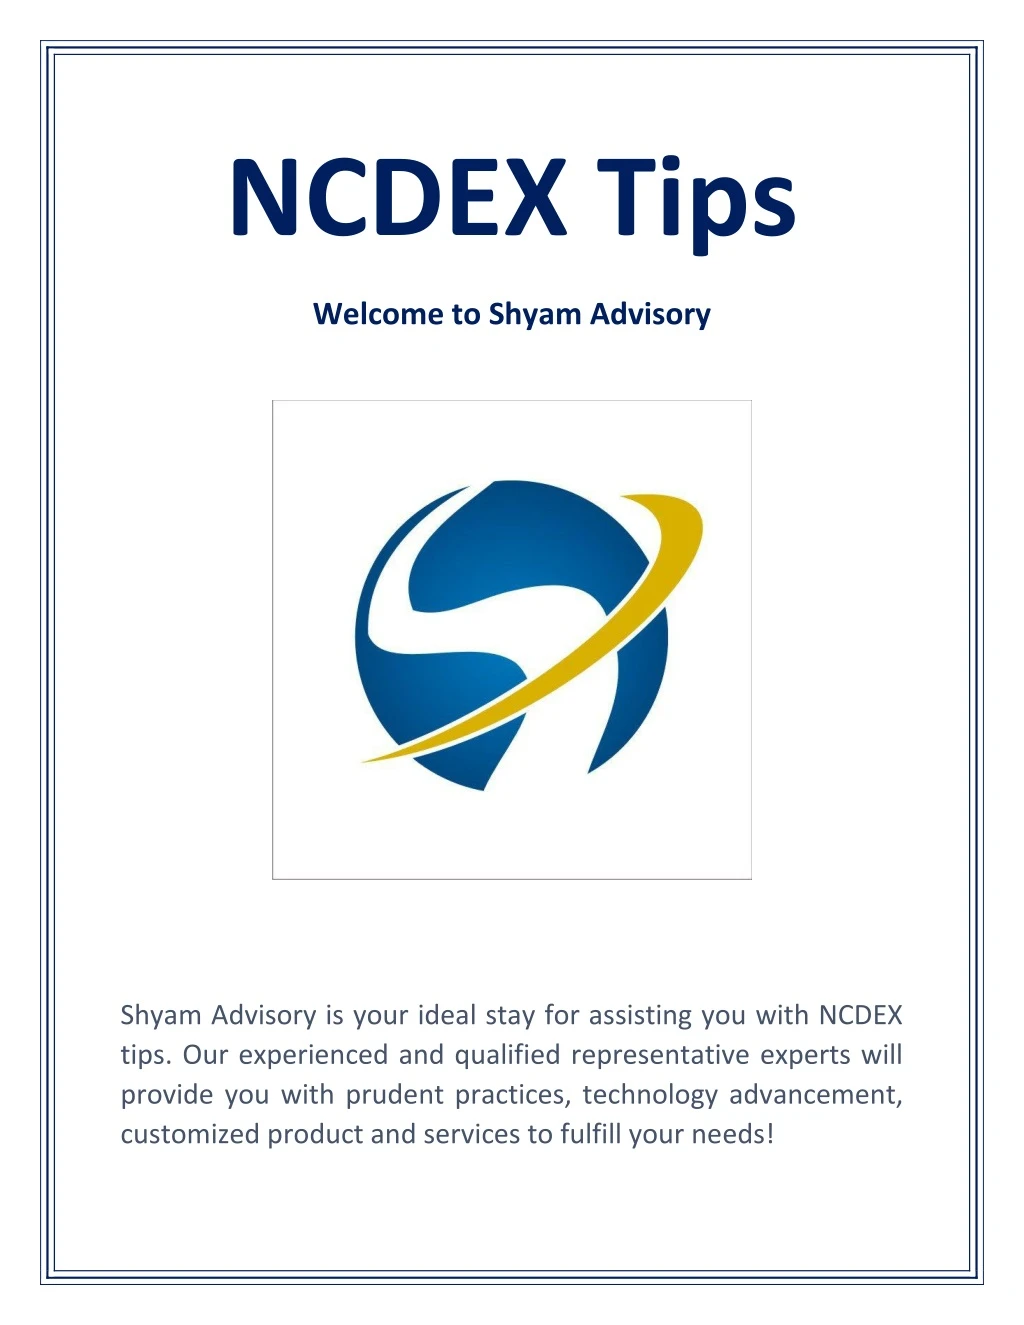 ncdex tips